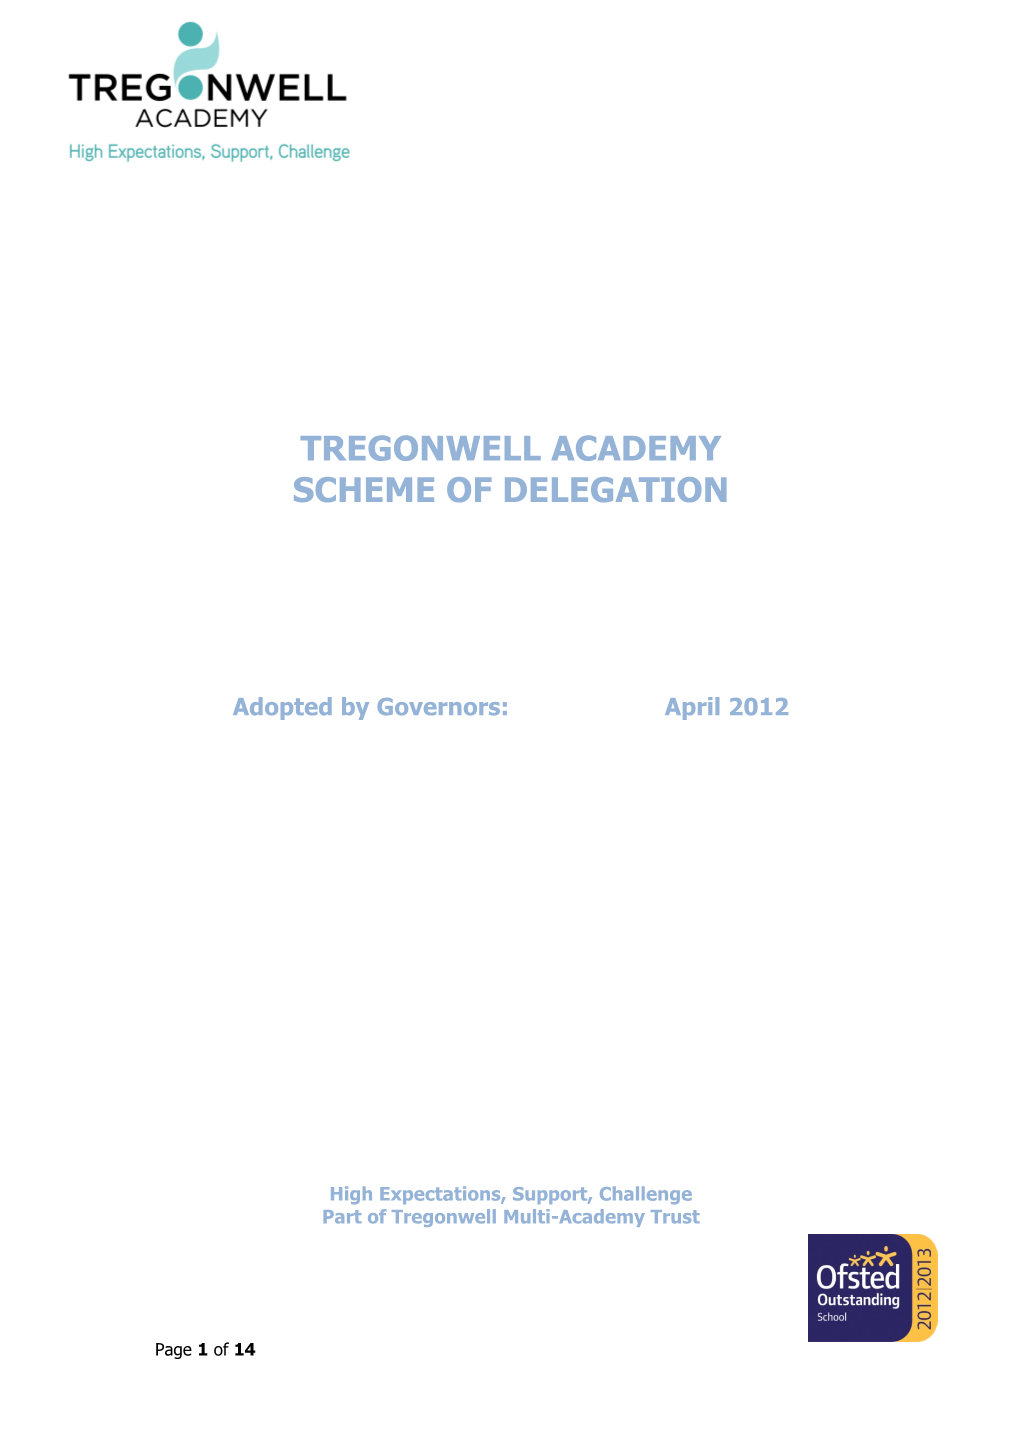 Tregonwell Academy